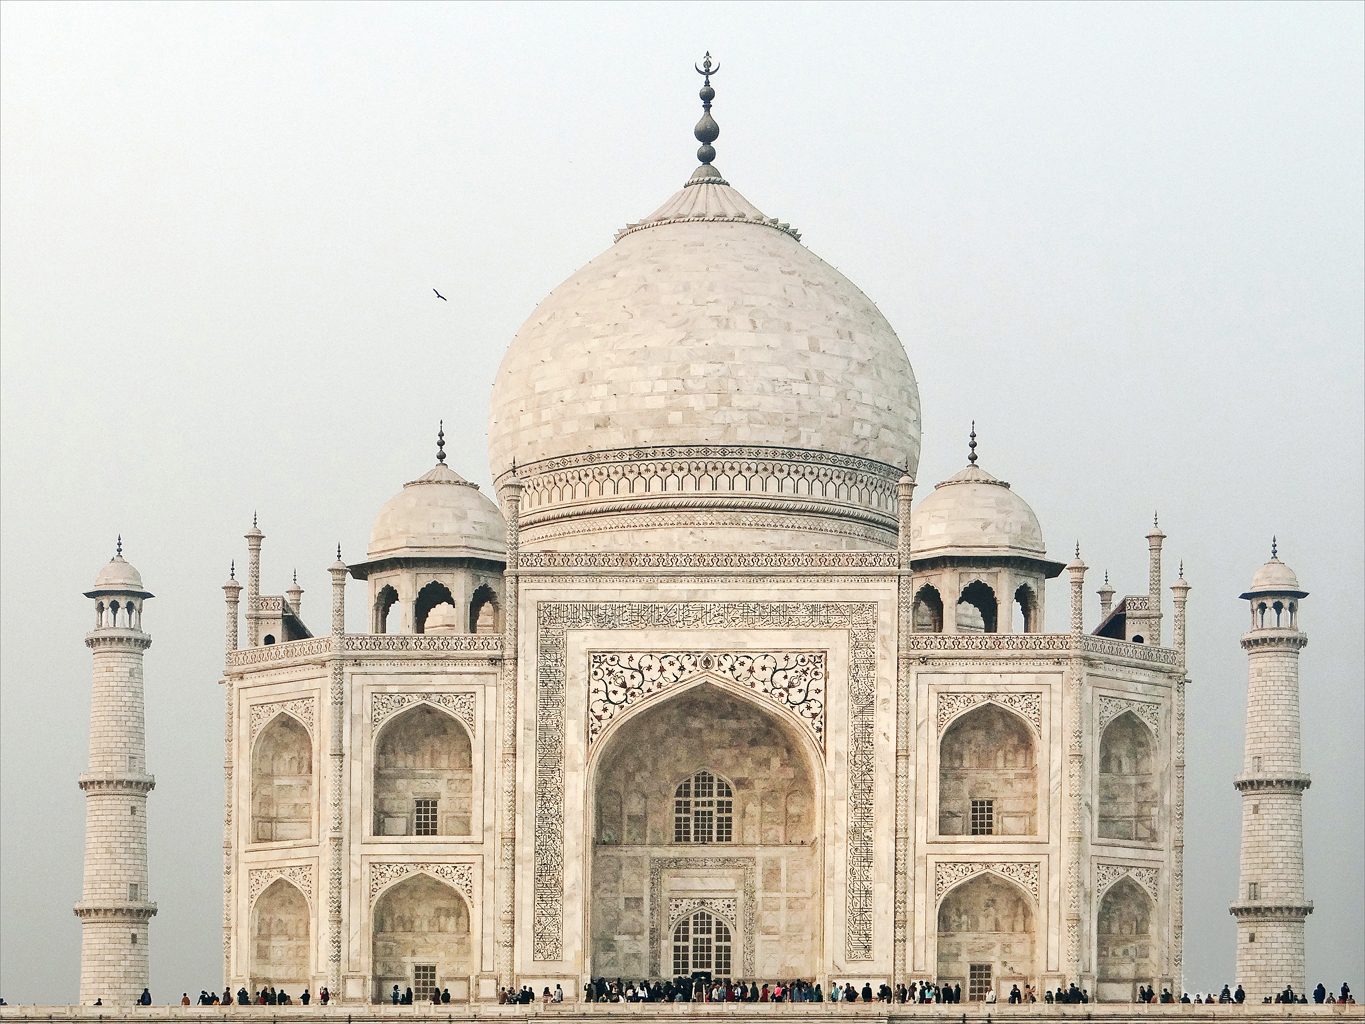 Uttar Pradesh, Agra (Taj Mahal)